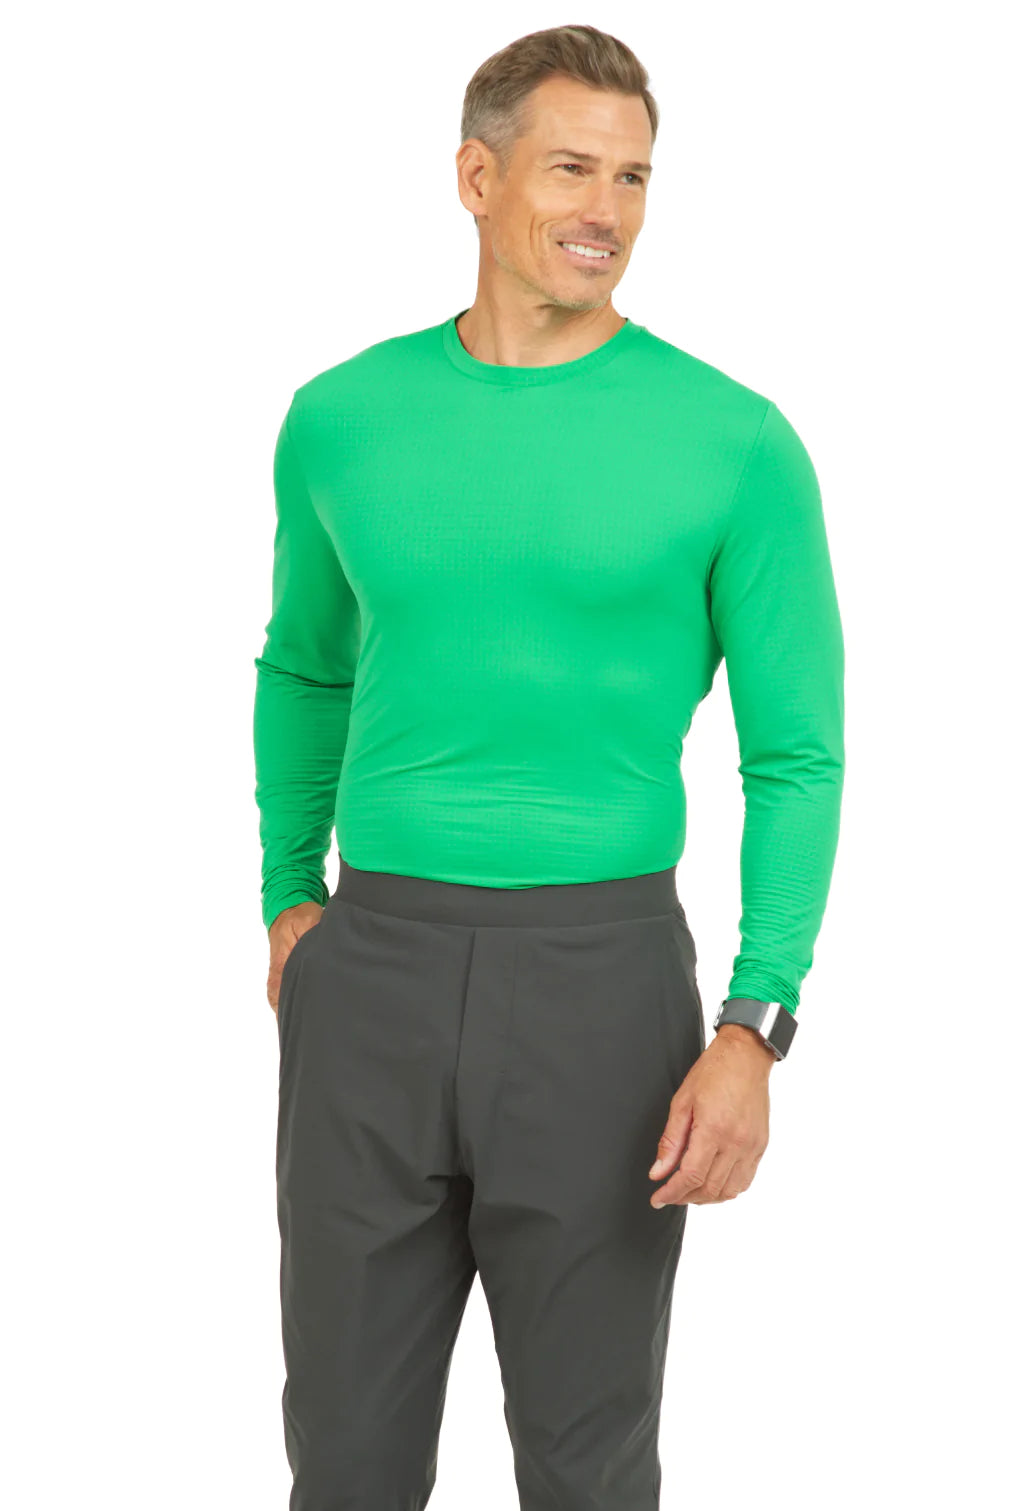 Long Sleeve Crewneck T-Shirt - 93199 (Modern Fit)